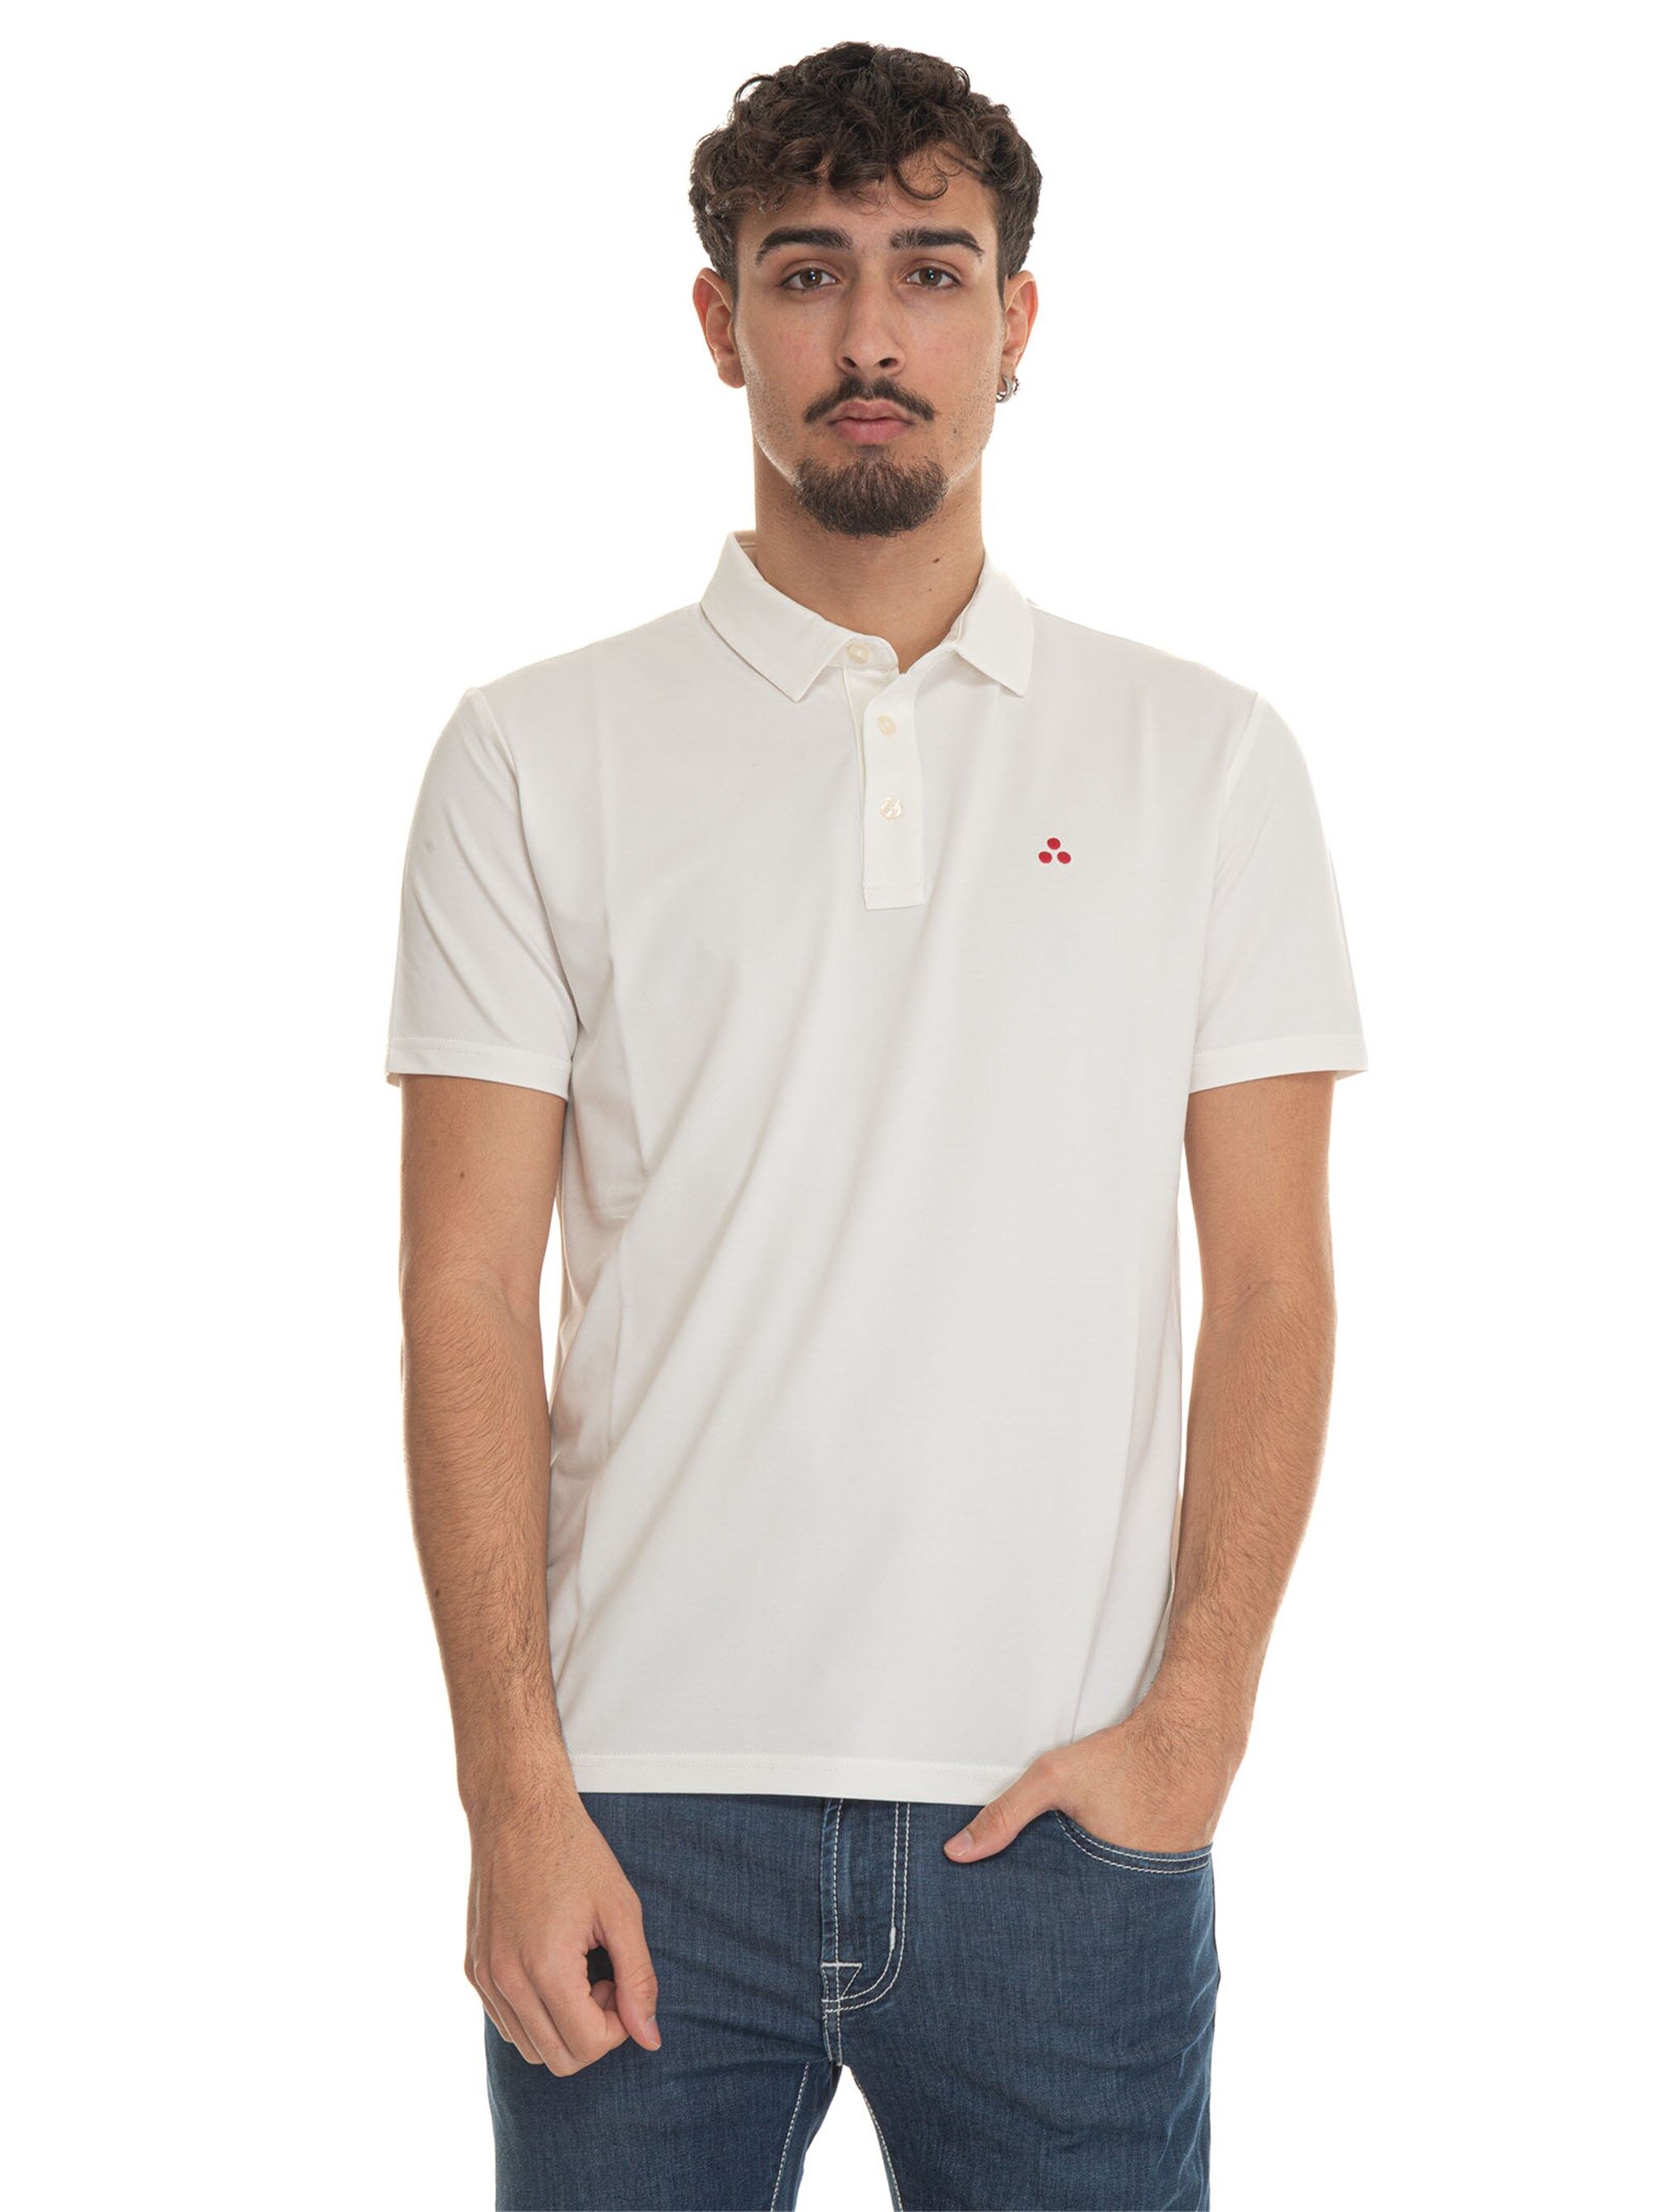 Peuterey Polo in jersey di cotone MEZZOLA01 Bianco Uomo XL